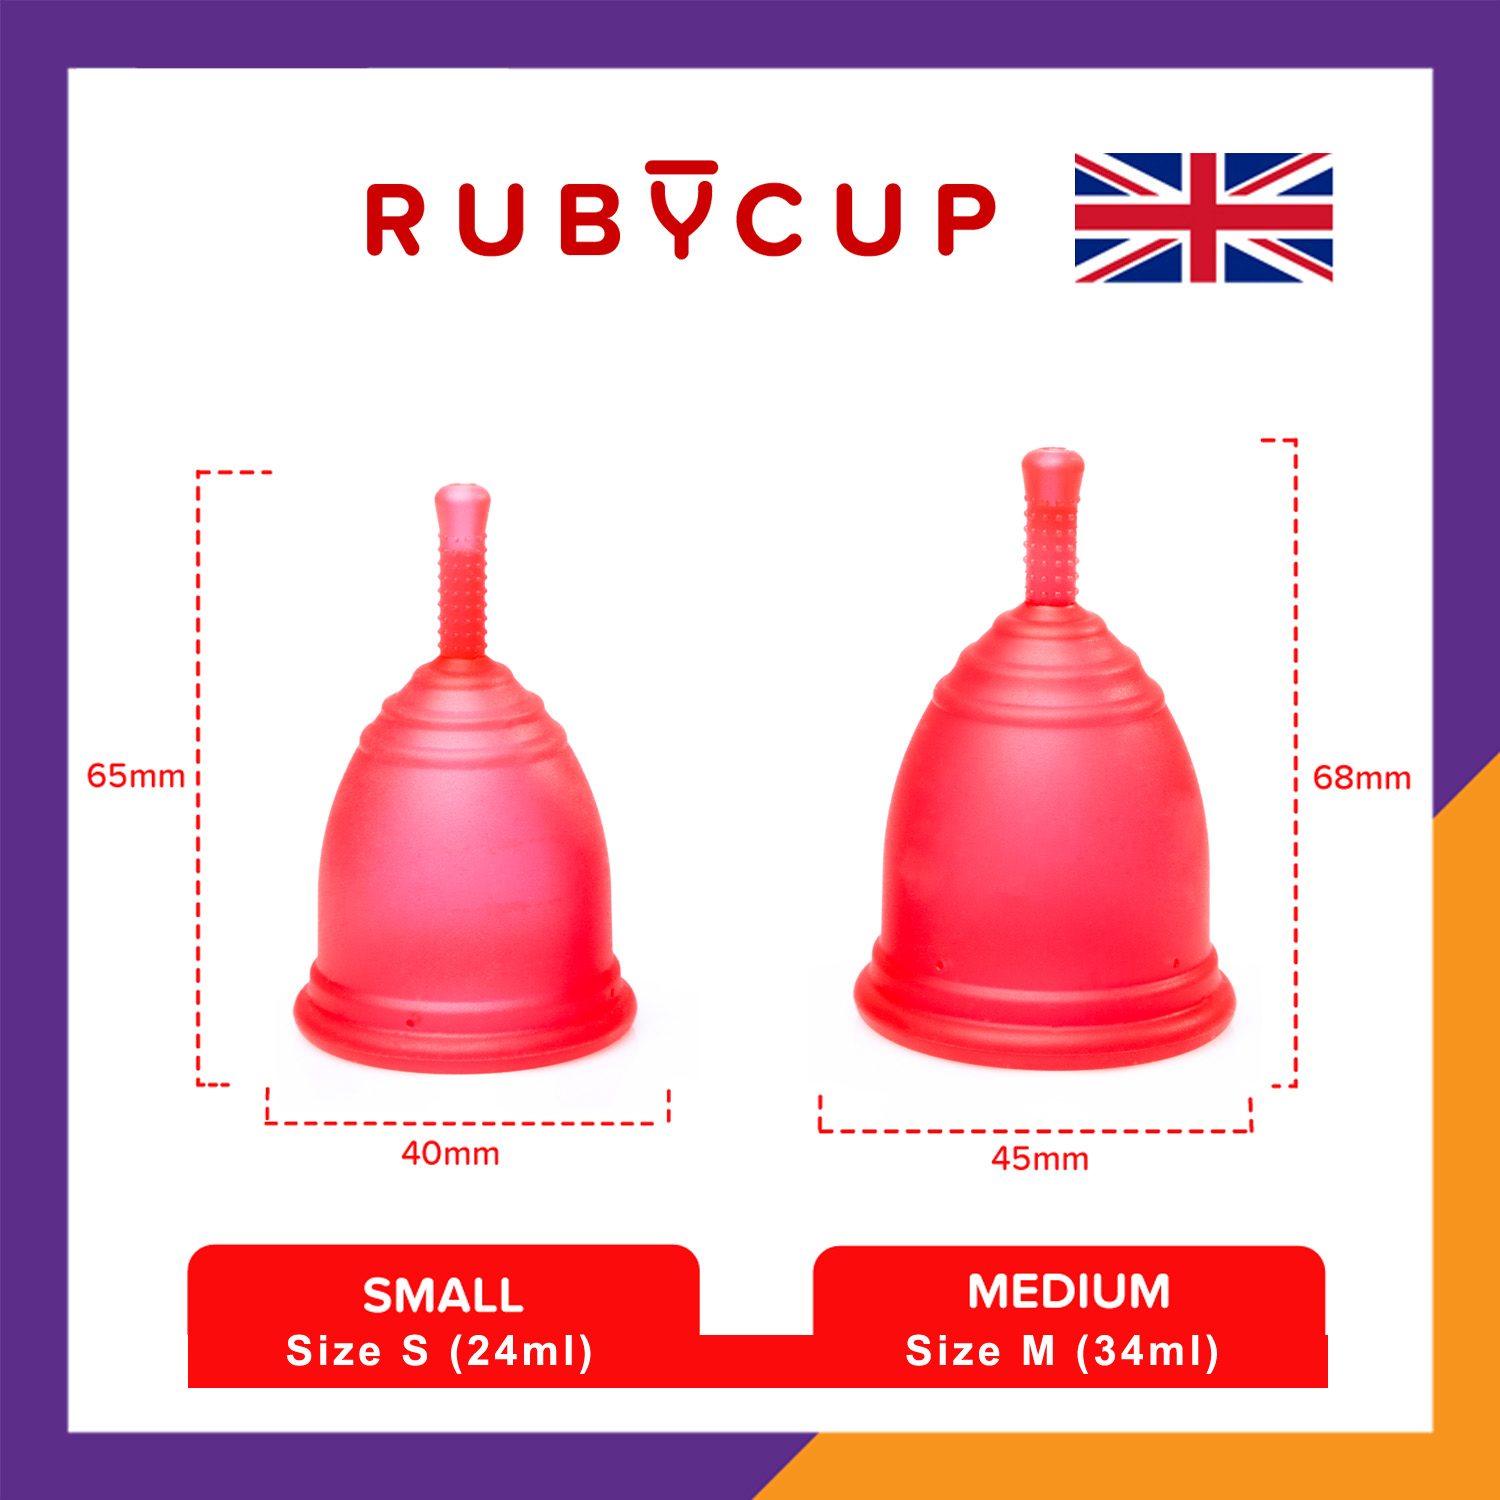 Cốc Nguyệt San Ruby Cup Anh Màu Đỏ Size S 24ml - Độ Mềm Phù Hợp Phụ Nữ Việt - Vật liệu 100% Sillicon Y Tế Đạt Tiêu Chuẩn FDA – Hàng Chính Hãng Thương Hiệu Được Yêu Thích Tại Anh Và Hơn 36 Quốc Gia - Ruby Cup Red S